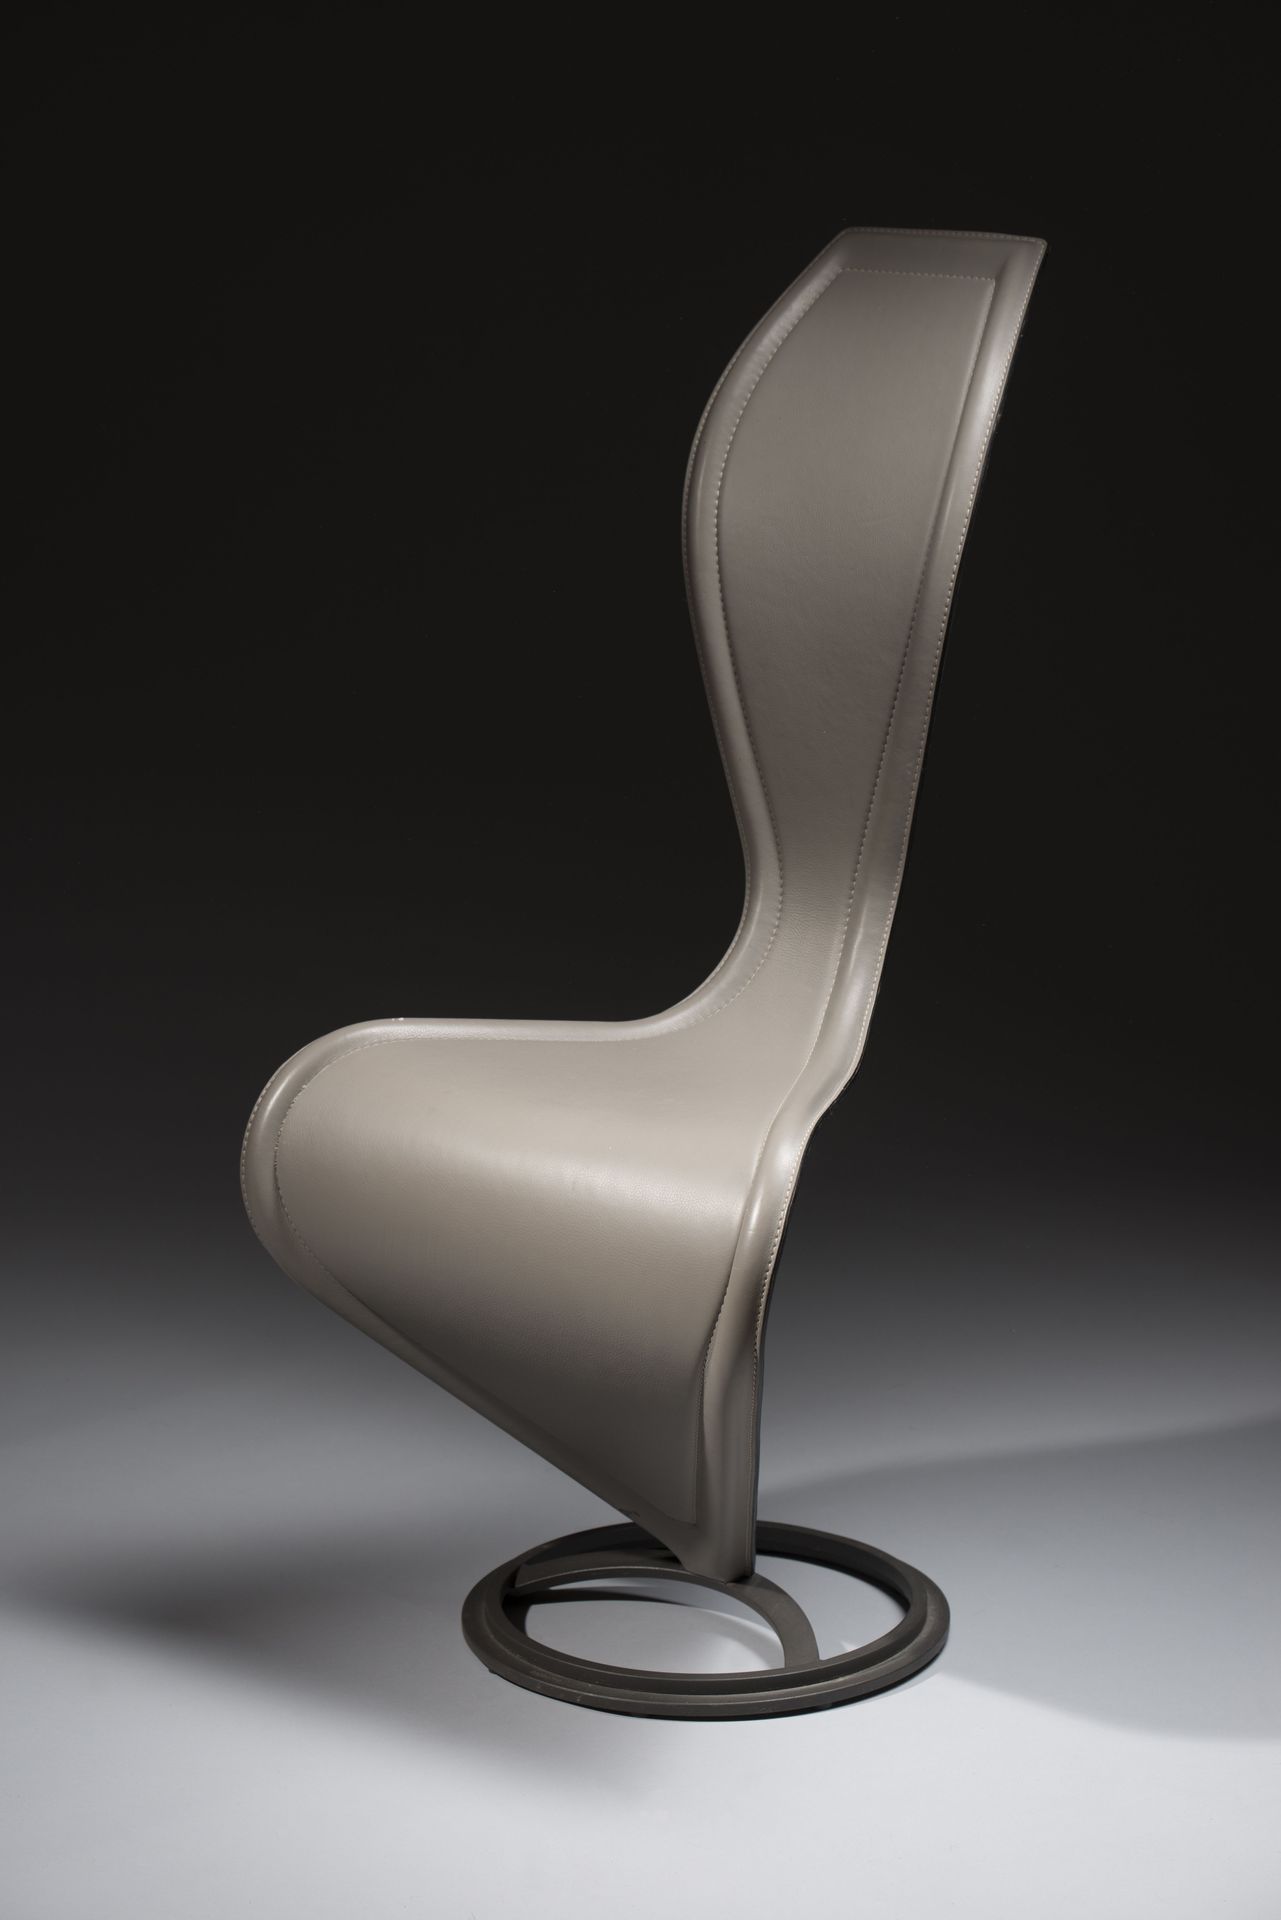 Null 汤姆-迪克森（生于1959年），卡佩里尼版本。 
椅子模型 "S椅"，灰色缝制皮革，铸铁底座。 
模型创建于1988年。
高度：104 - 宽度：50&hellip;